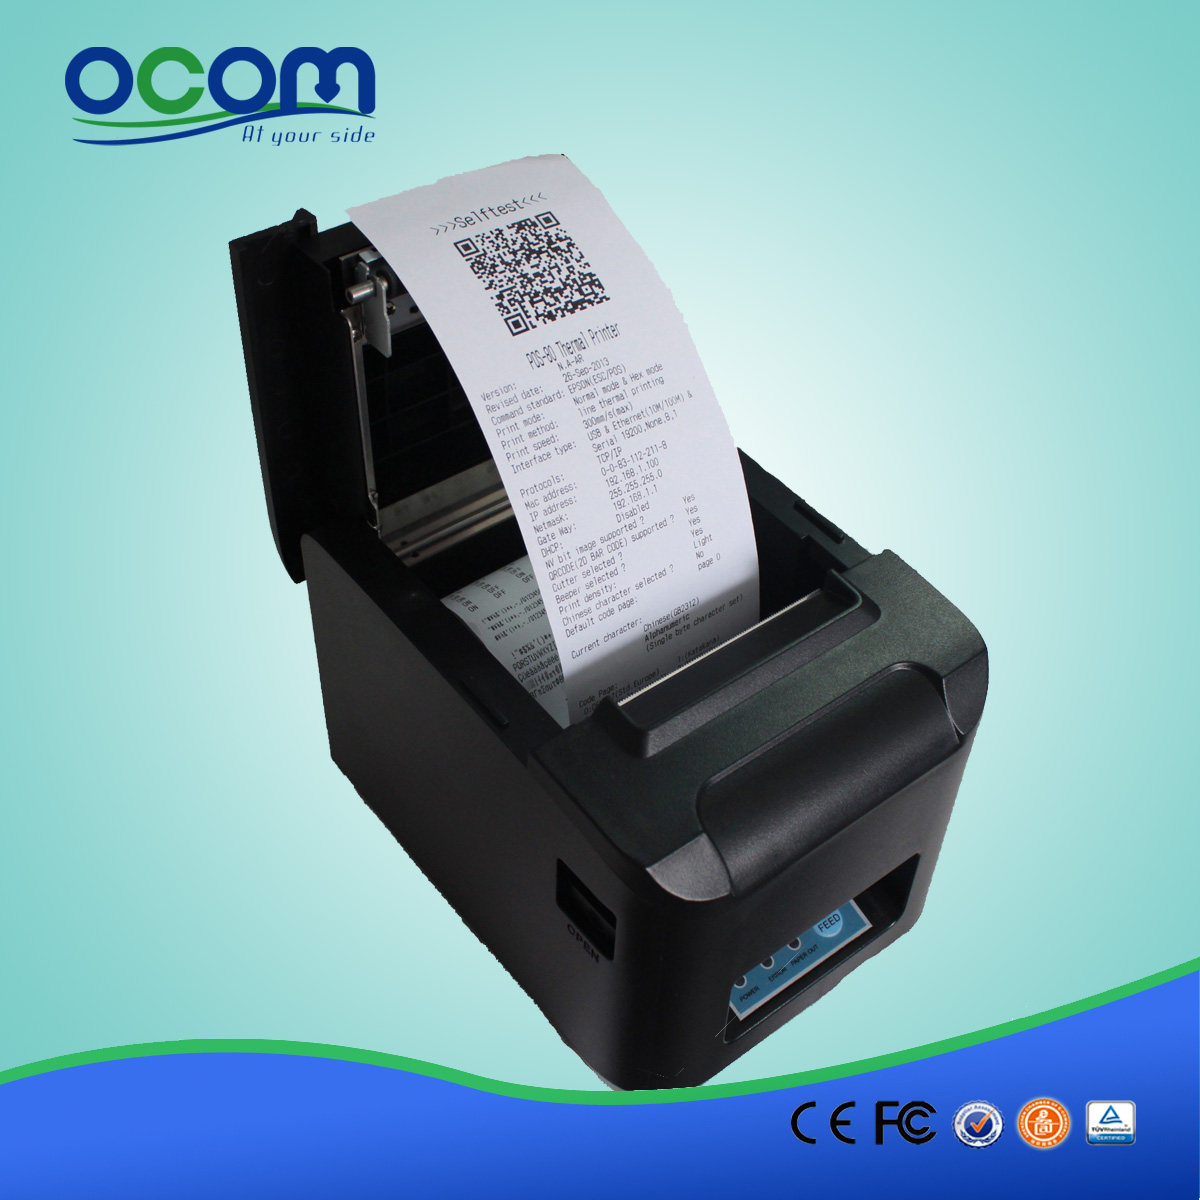 OCPP-808-URL do cortador automático Ethernet POS impressora de recibos térmica